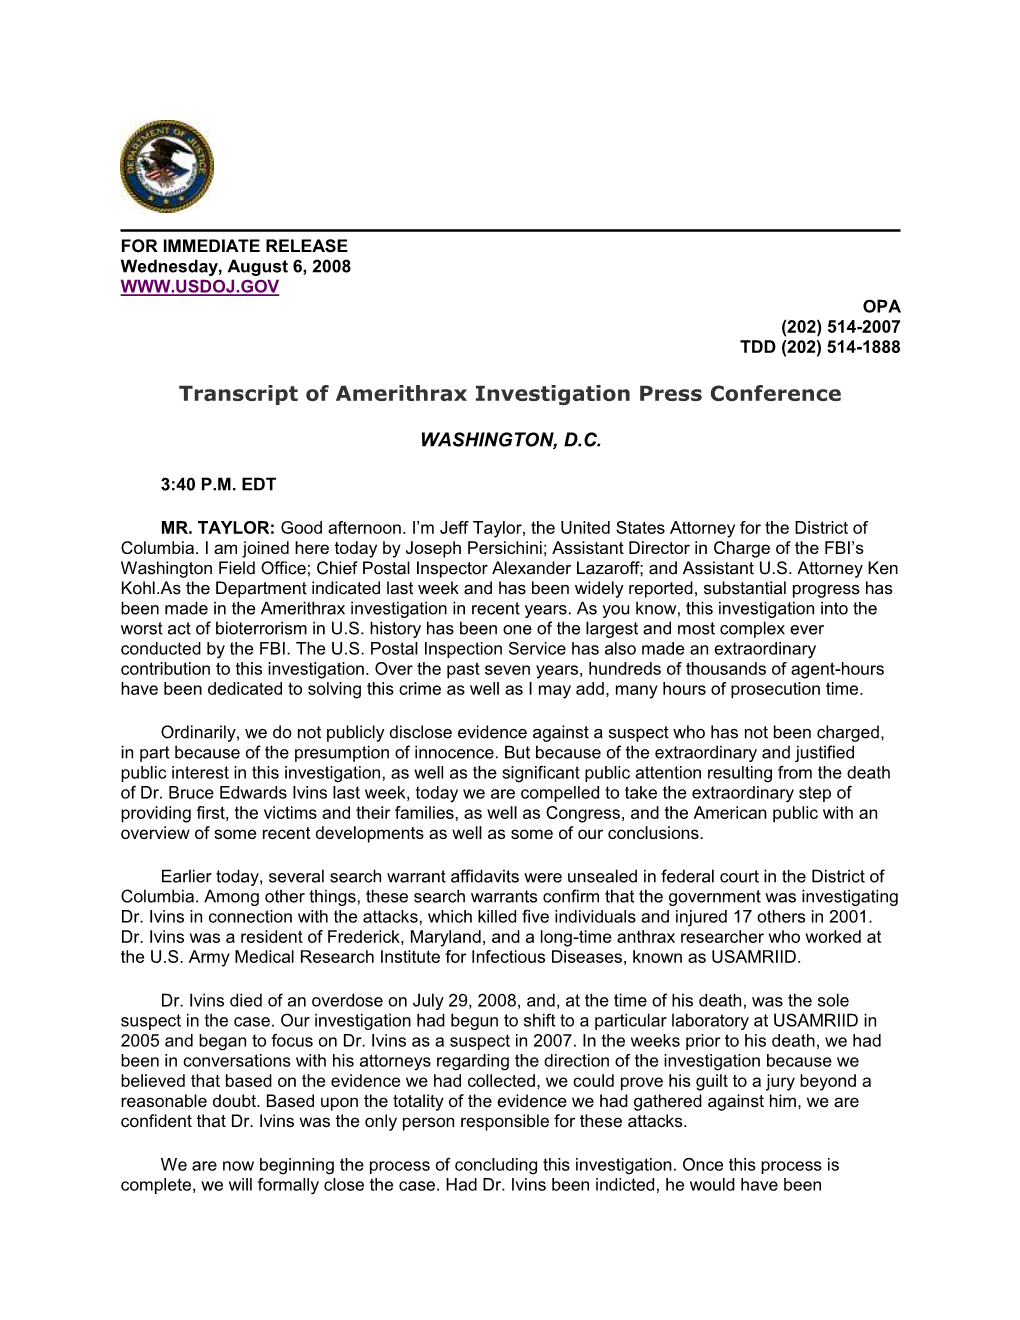 Transcript of Amerithrax Investigation Press Conference